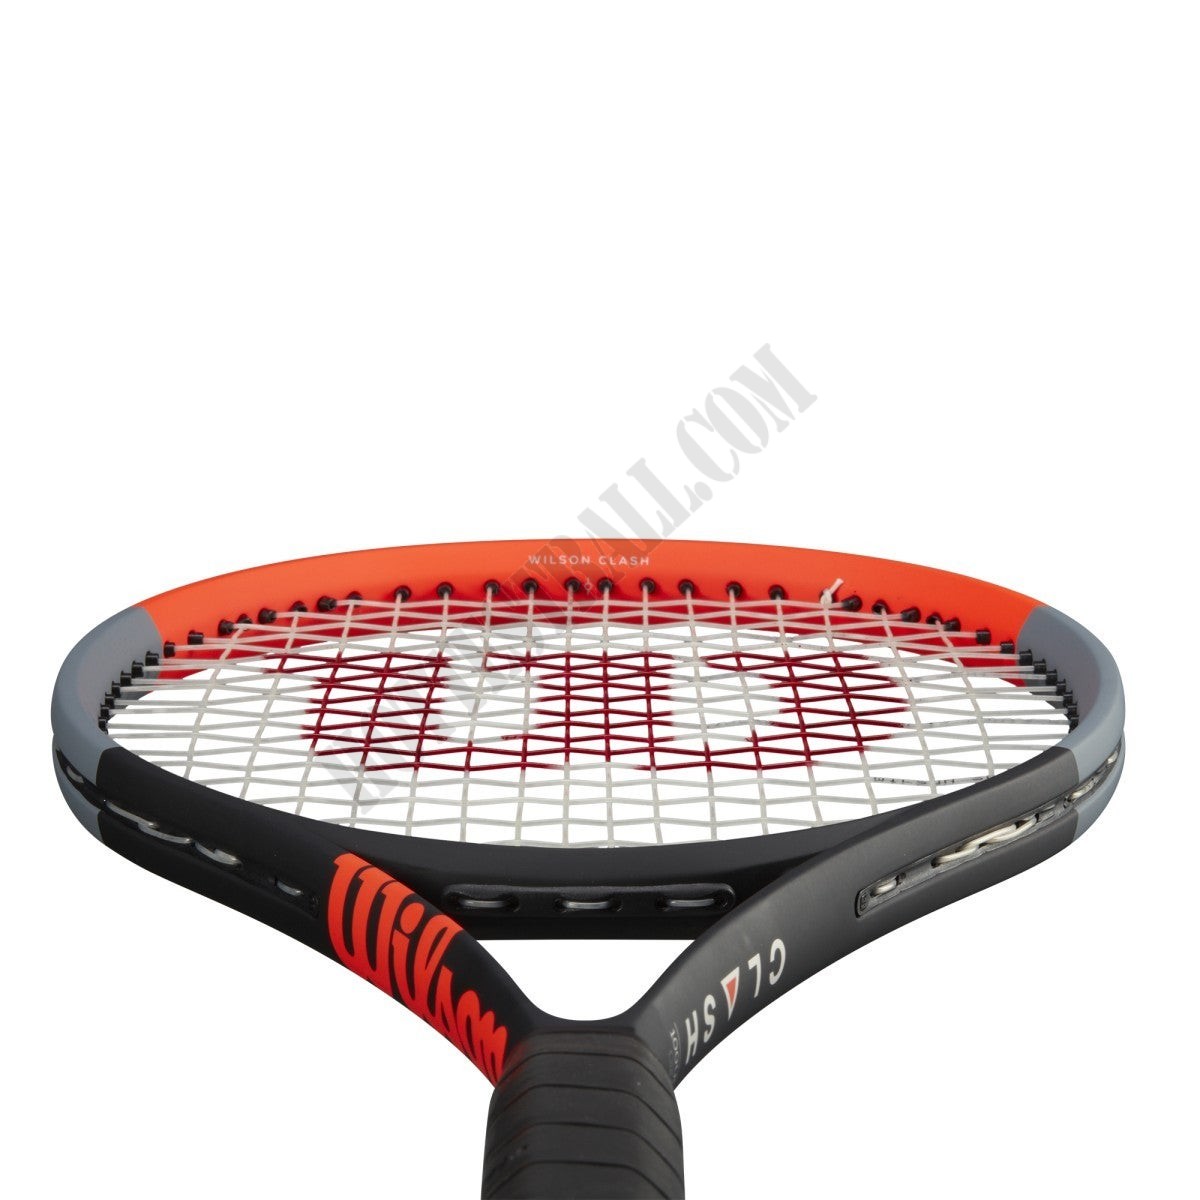 Clash 100UL Tennis Racket - Wilson Discount Store - -4